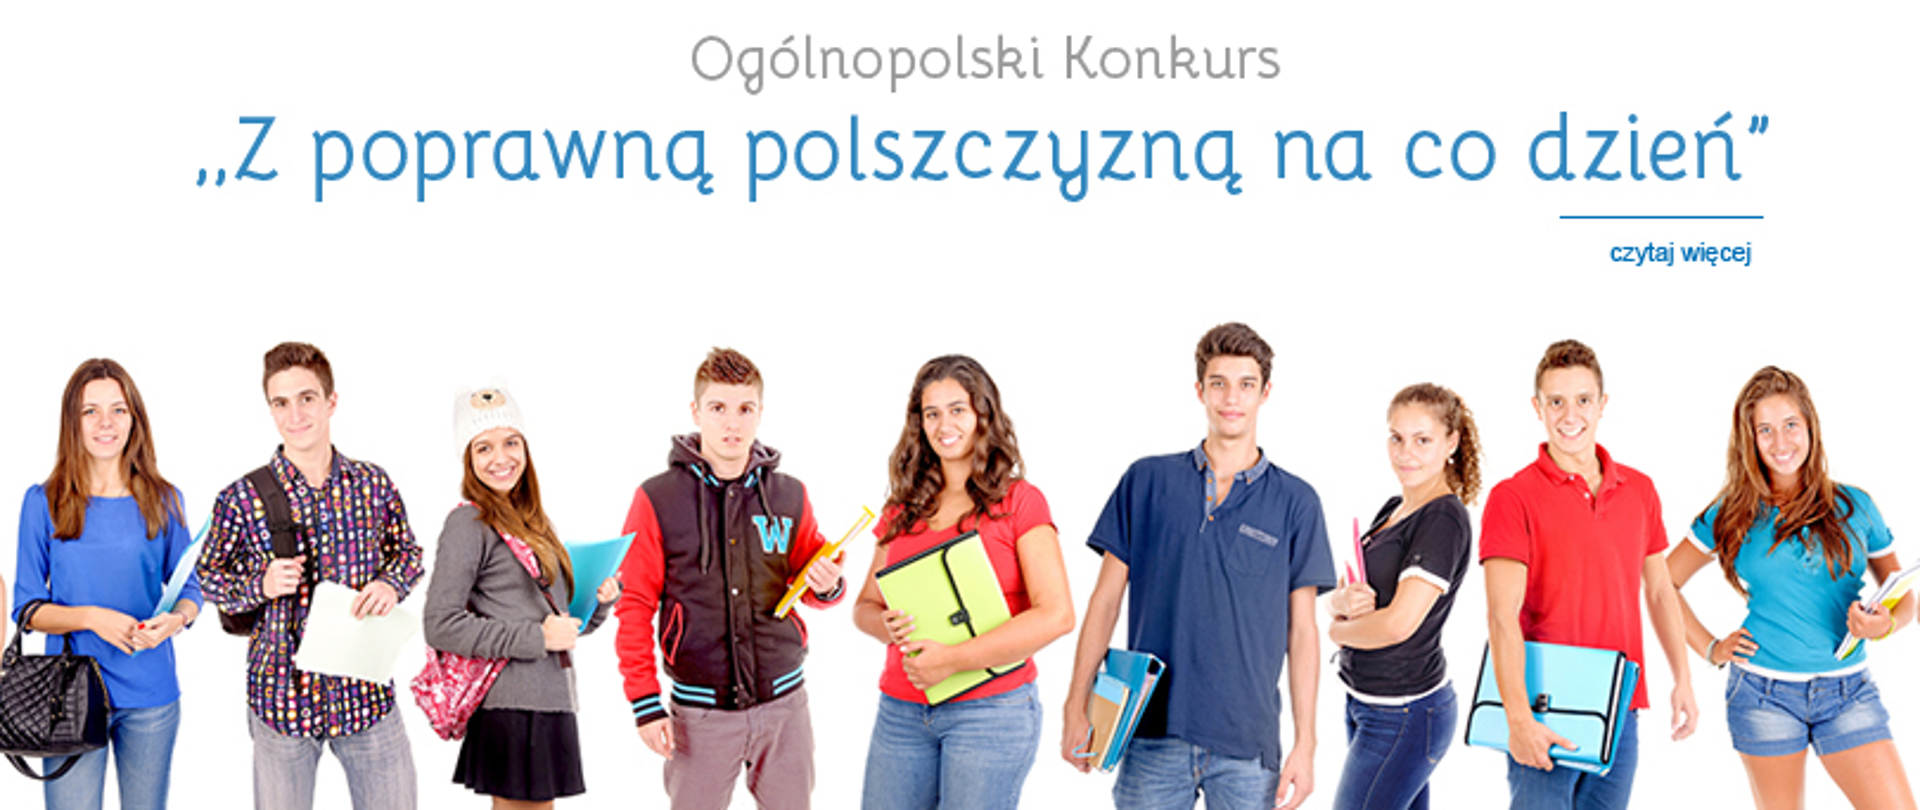 „Z poprawną polszczyzną i ortografią na co dzień" - logo konkursu